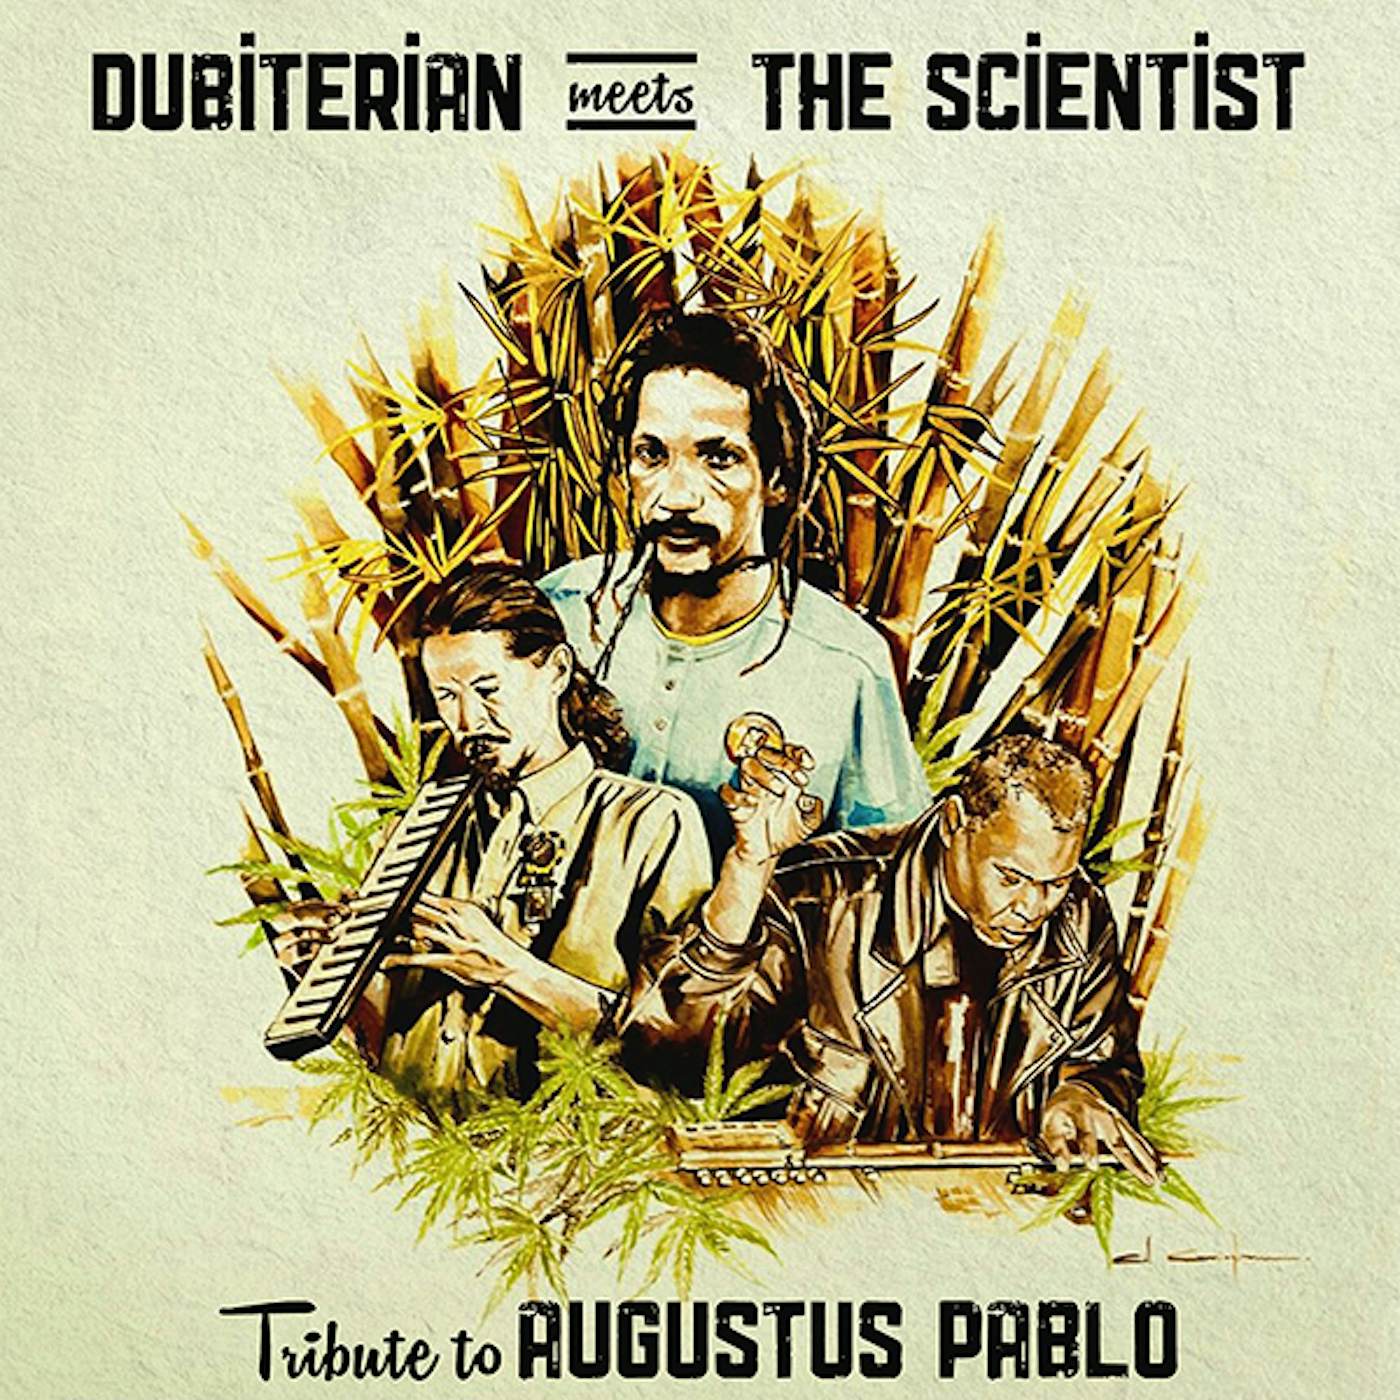 DUBITERIAN MEETS THE SCIENTIST TRIBUTE TO AUGUSTUS PABLO Vinyl Record